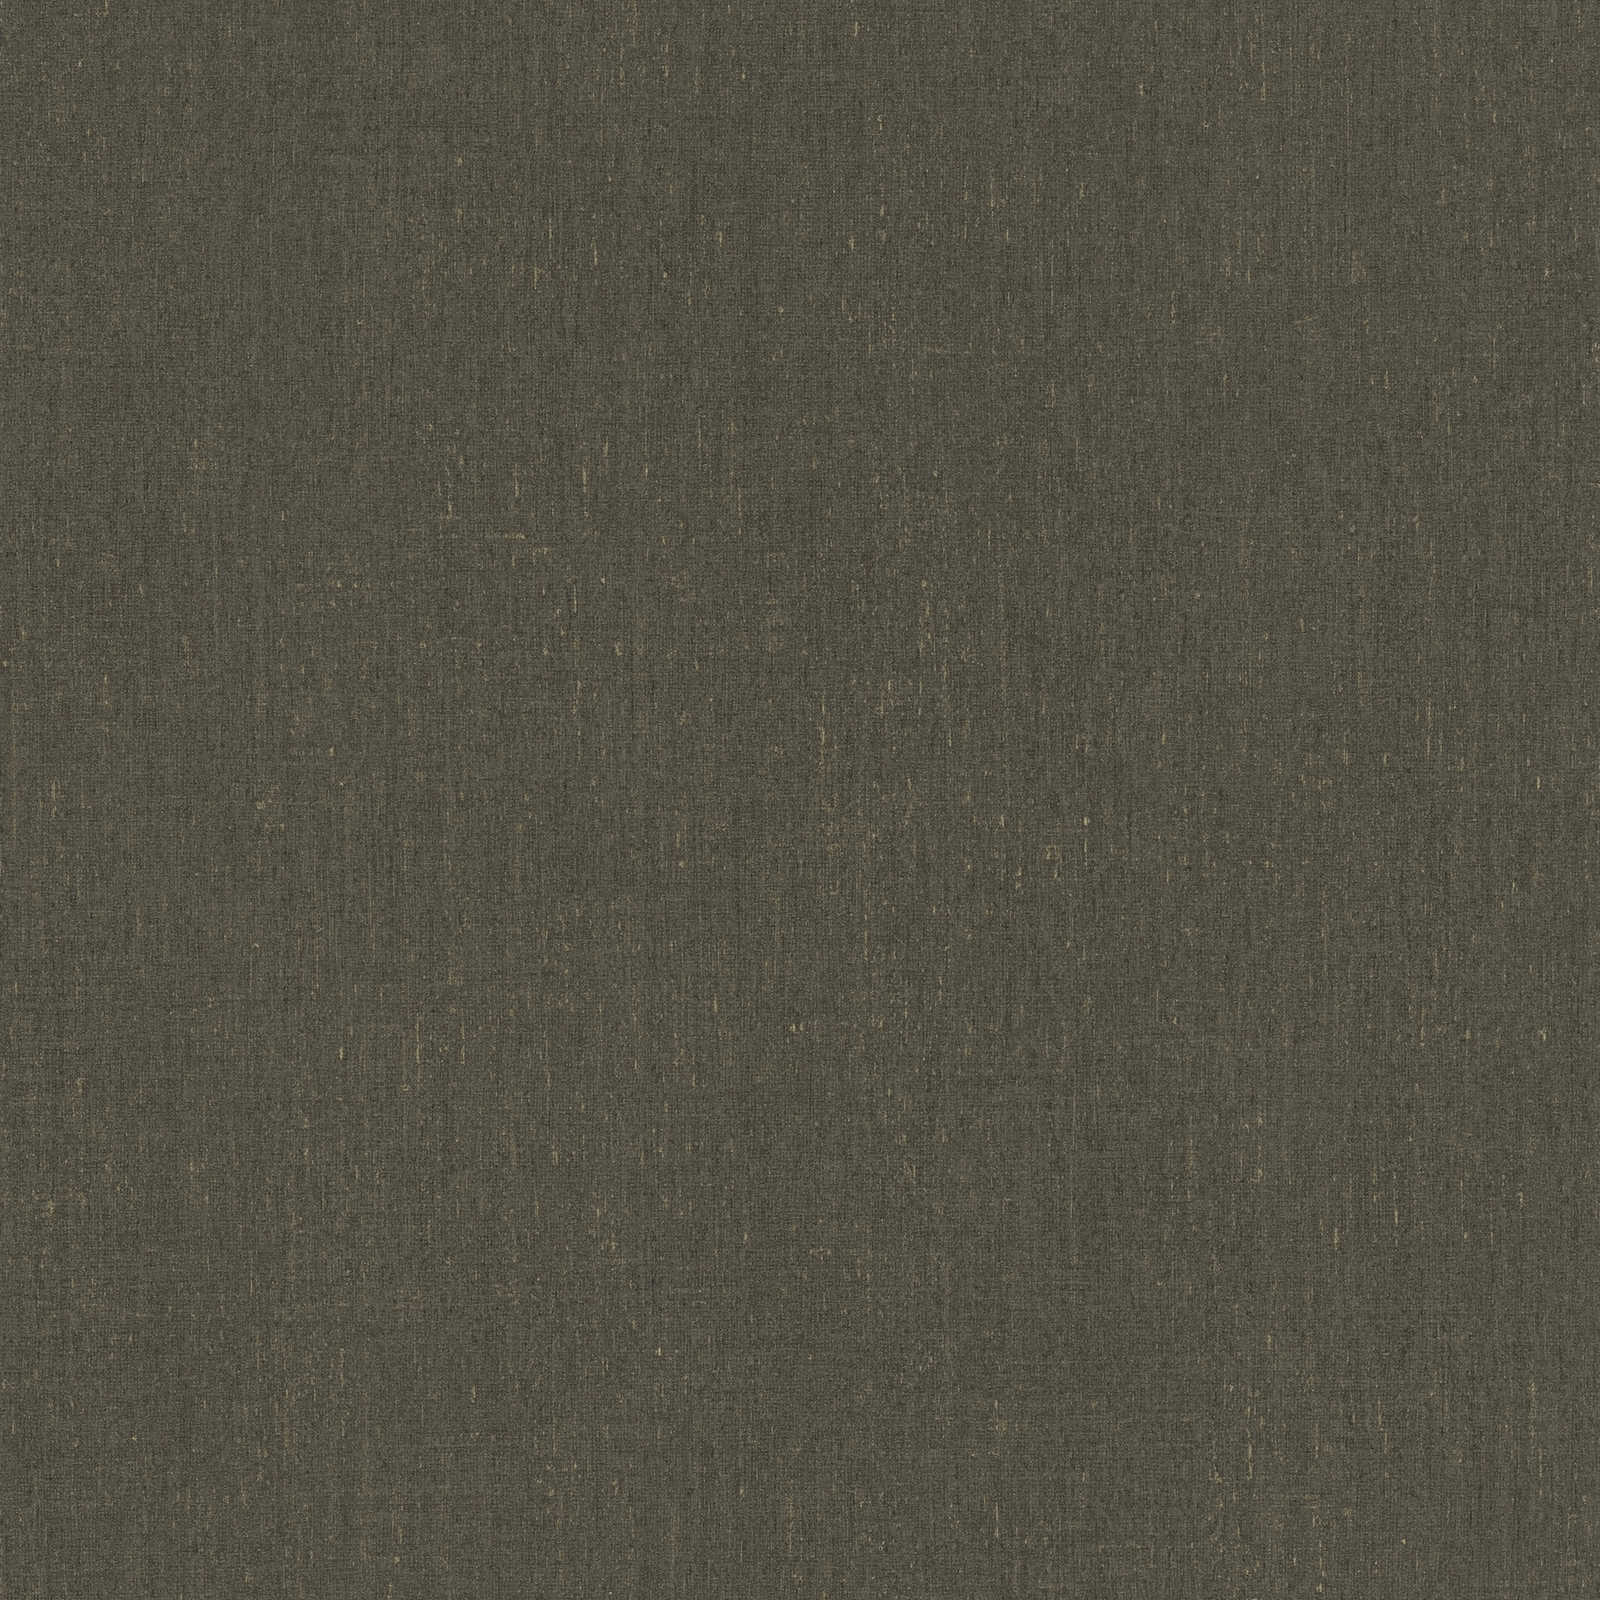 Carta da parati liscia marrone scuro con dettaglio struttura - marrone, grigio
